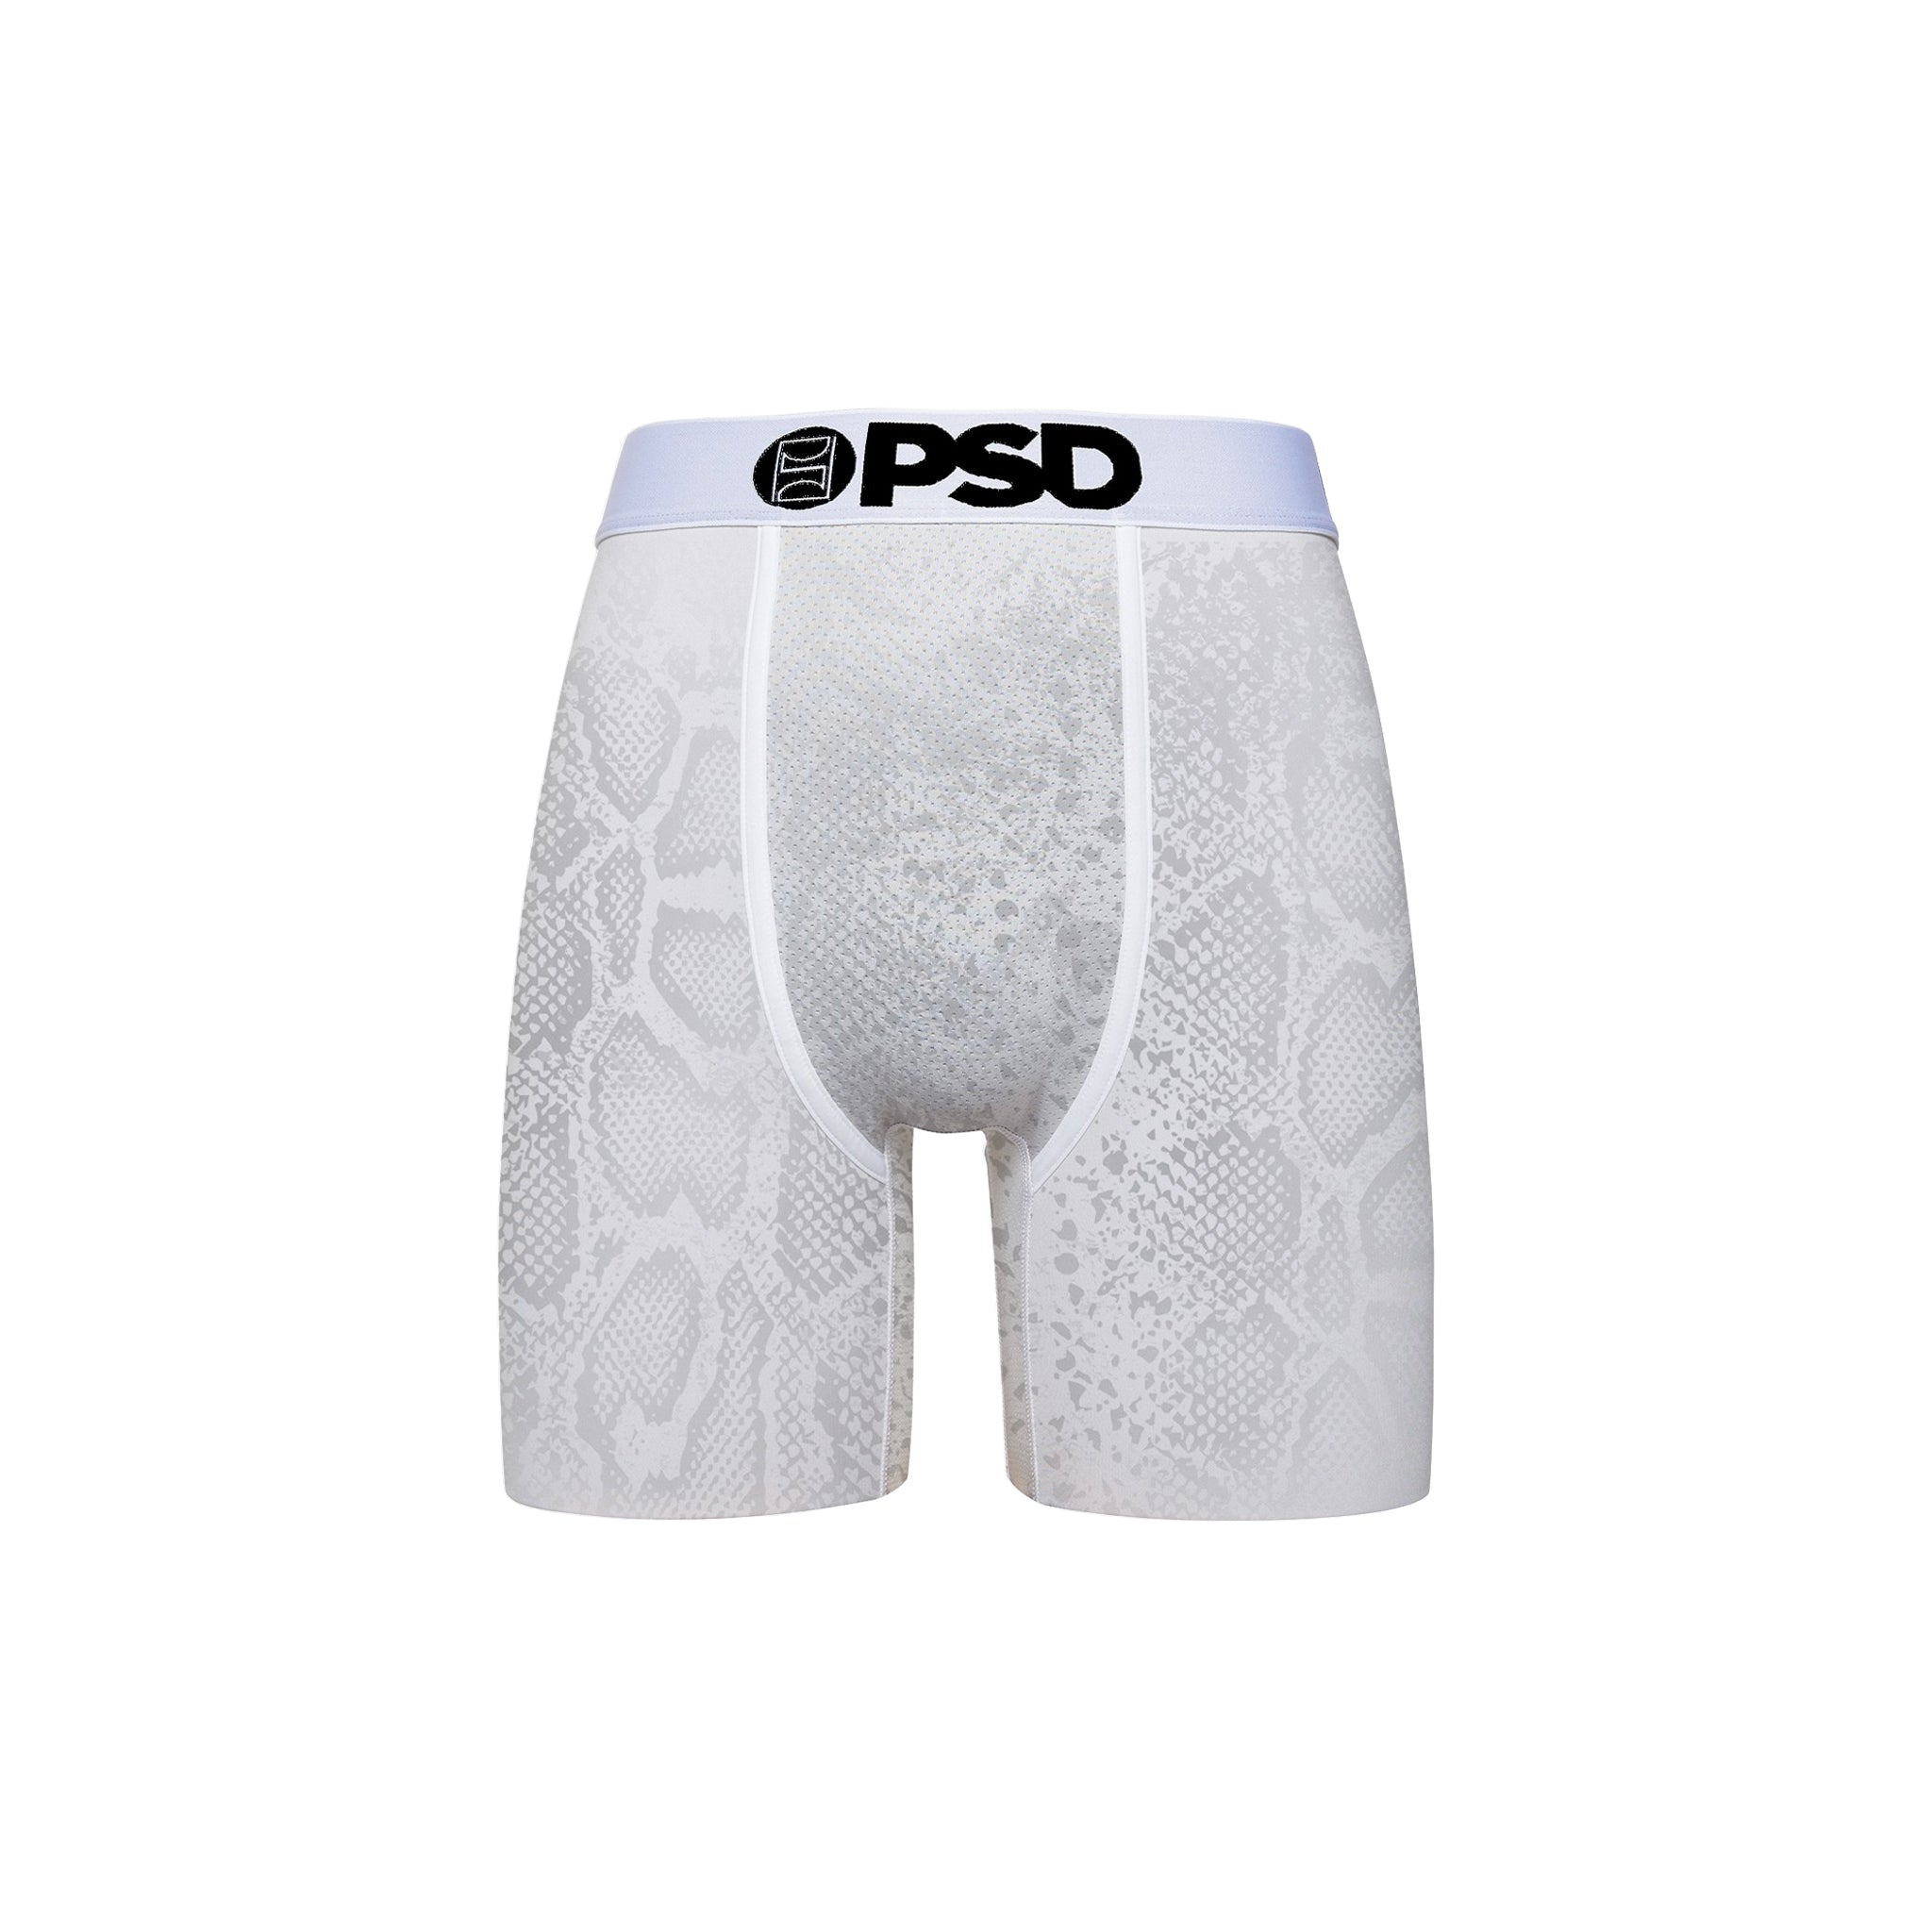 PSD "White Scale" Underwear